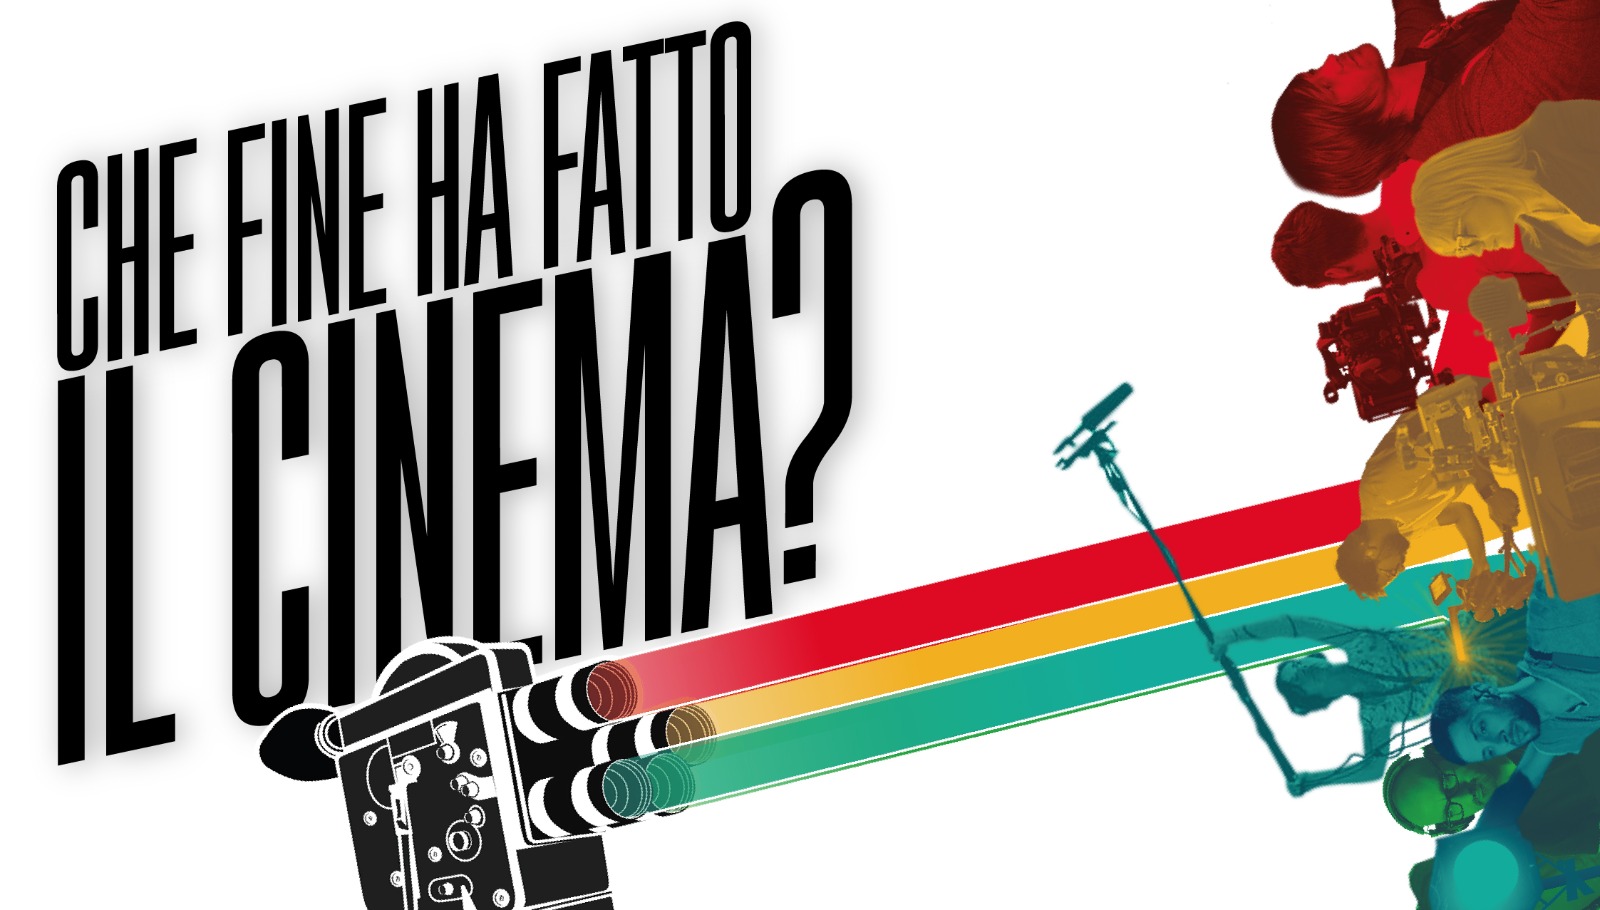 Lombardia Film Commission: che fine ha fatto il cinema?